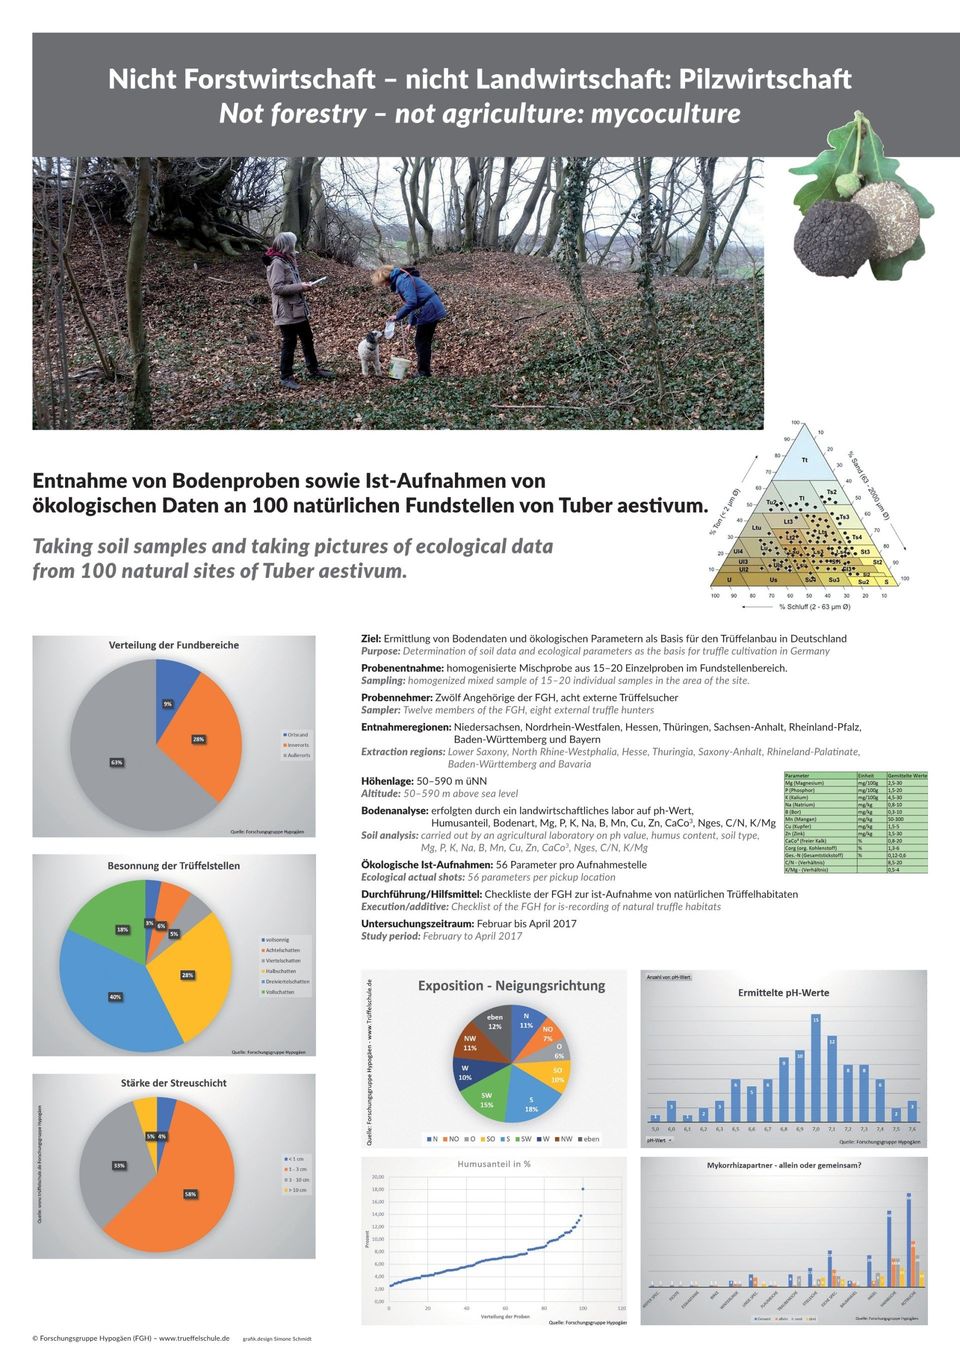 Poster: Die Trüffelschule ermittelte von 100 natürlichen Trüffelstellen die Basisdaten für den Trüffelanbau